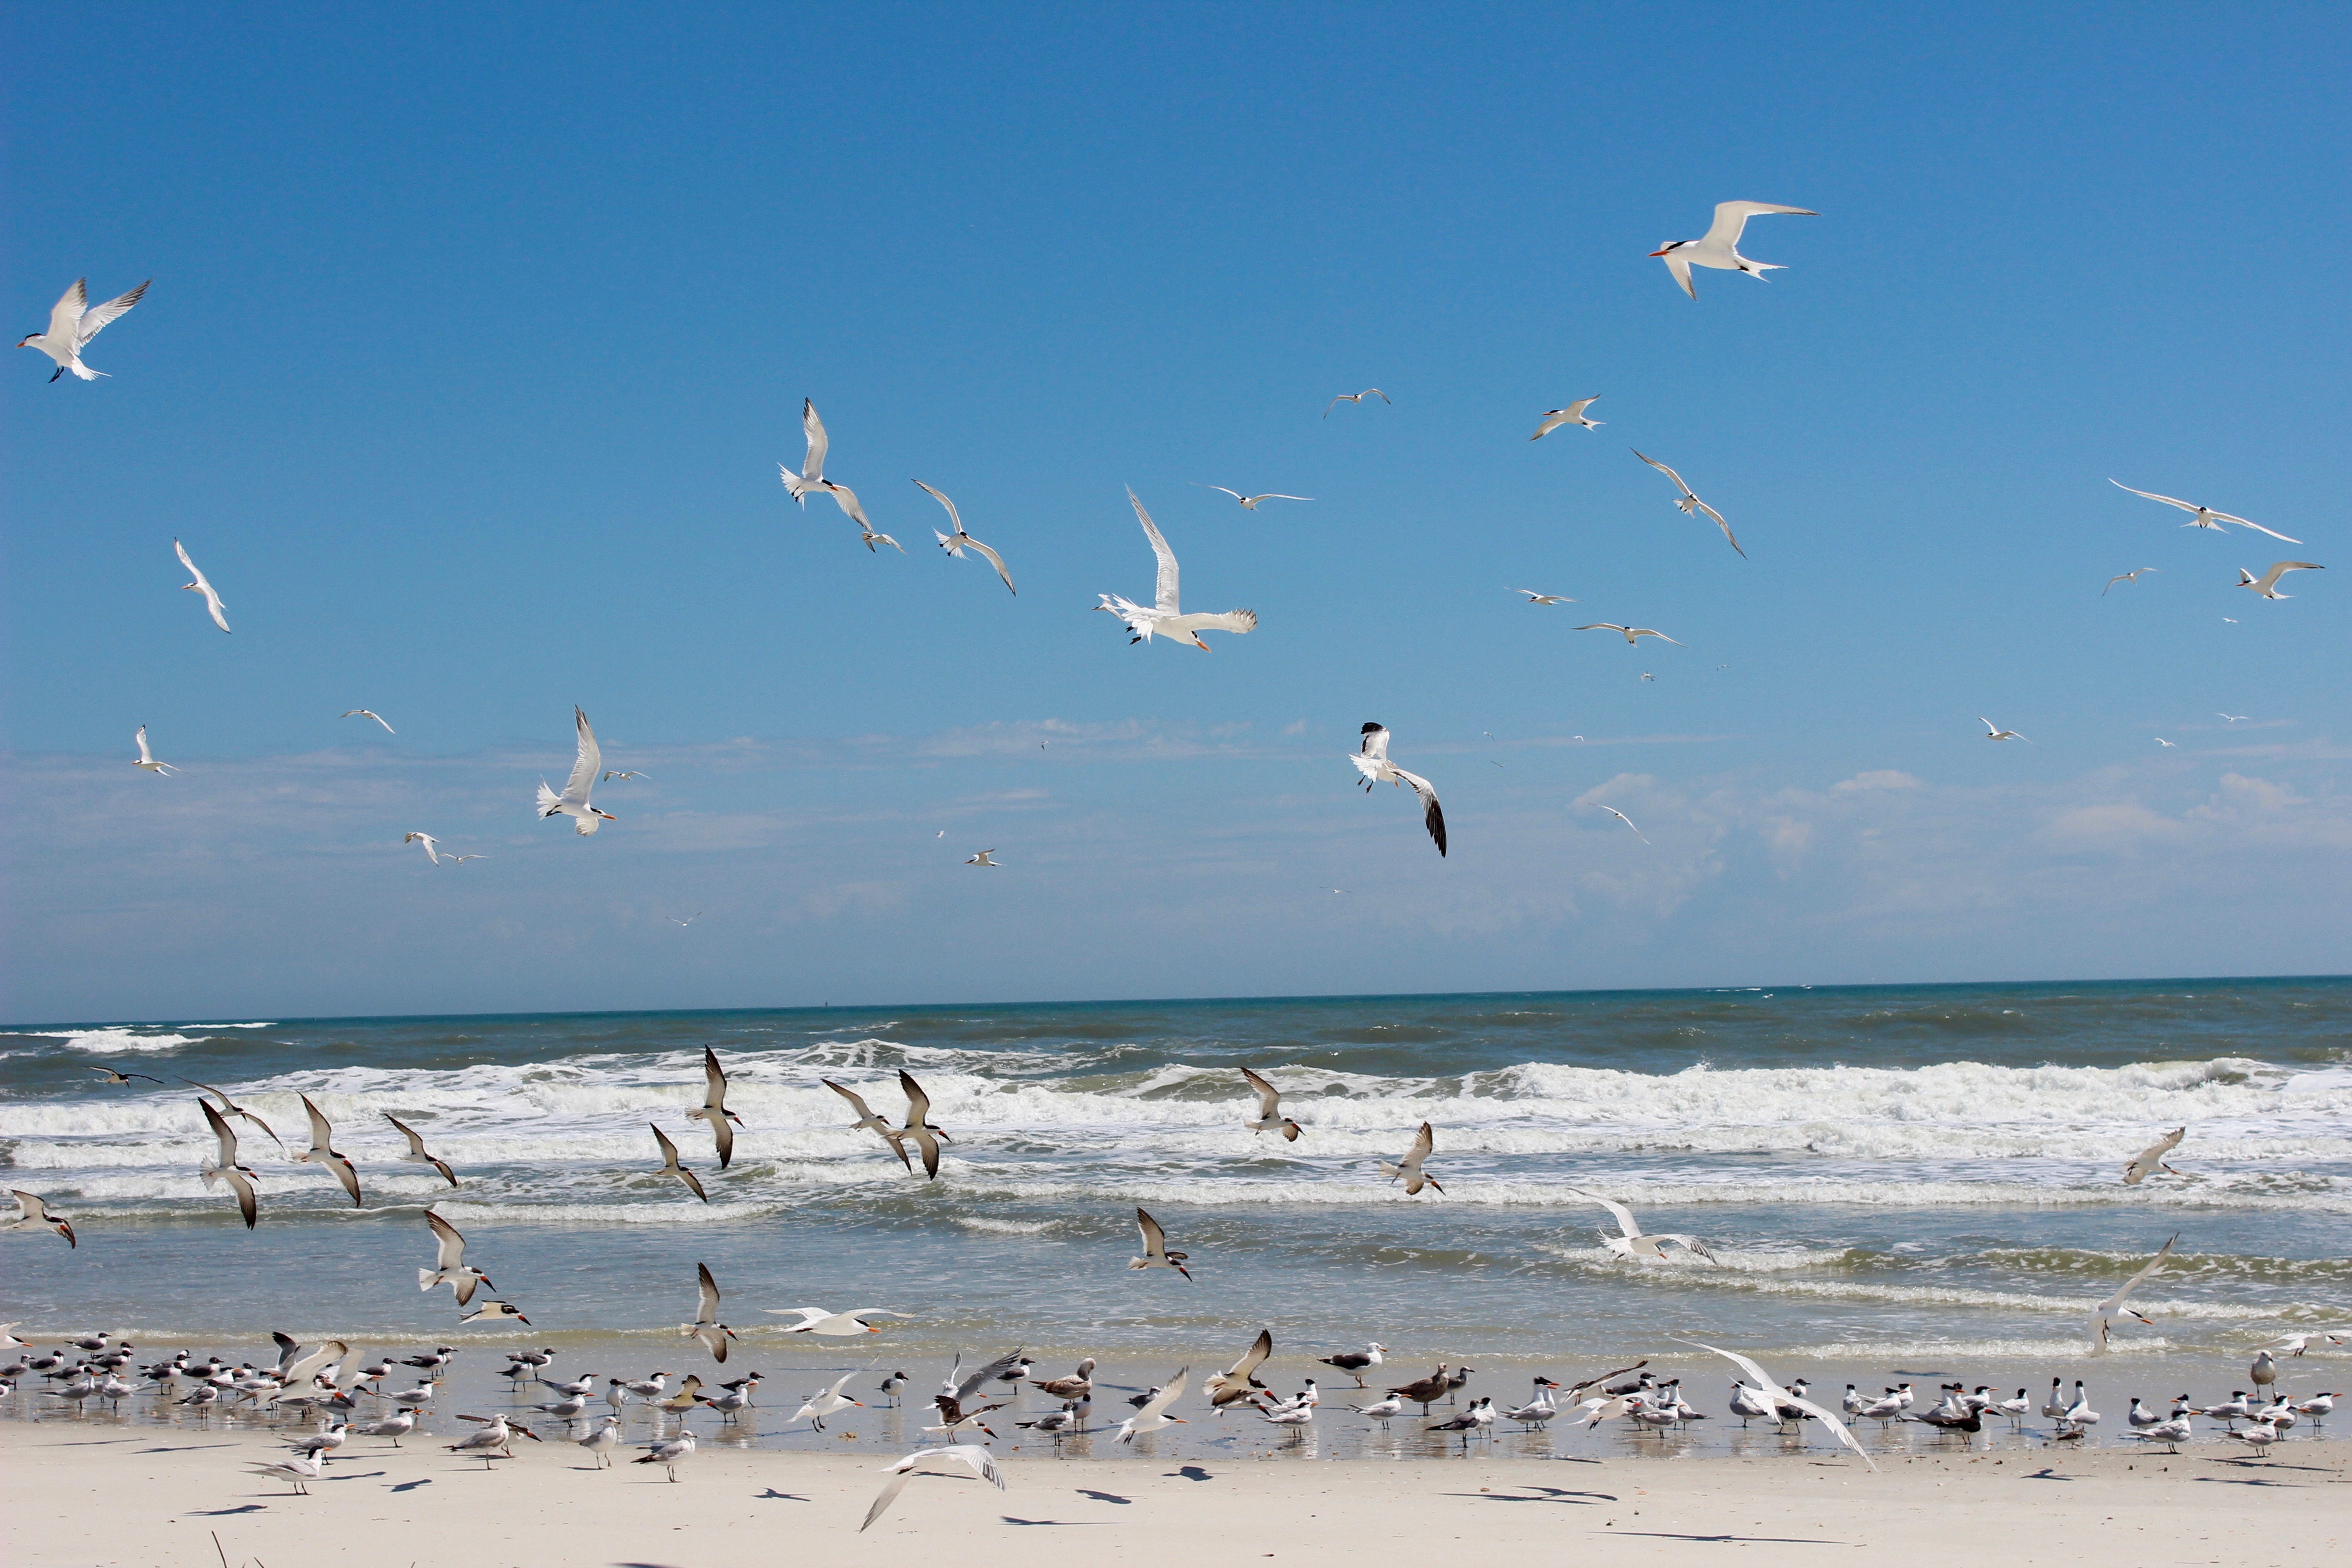 Shorebirds in flight at the beach